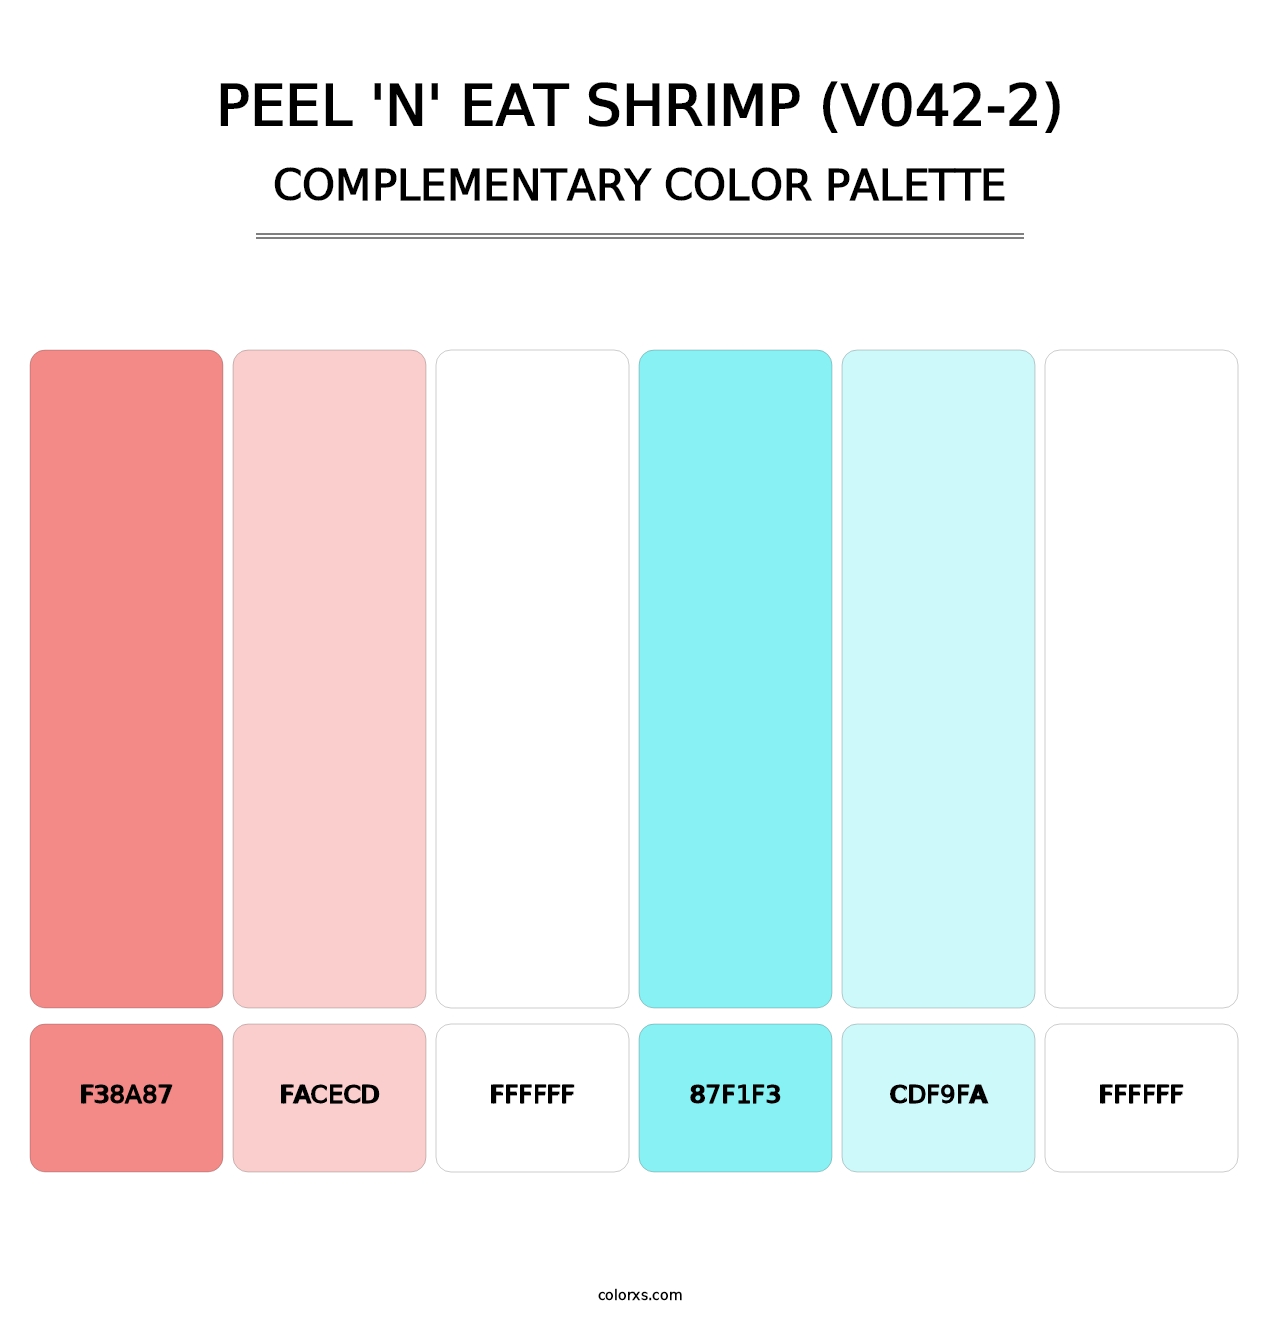 Peel 'n' Eat Shrimp (V042-2) - Complementary Color Palette